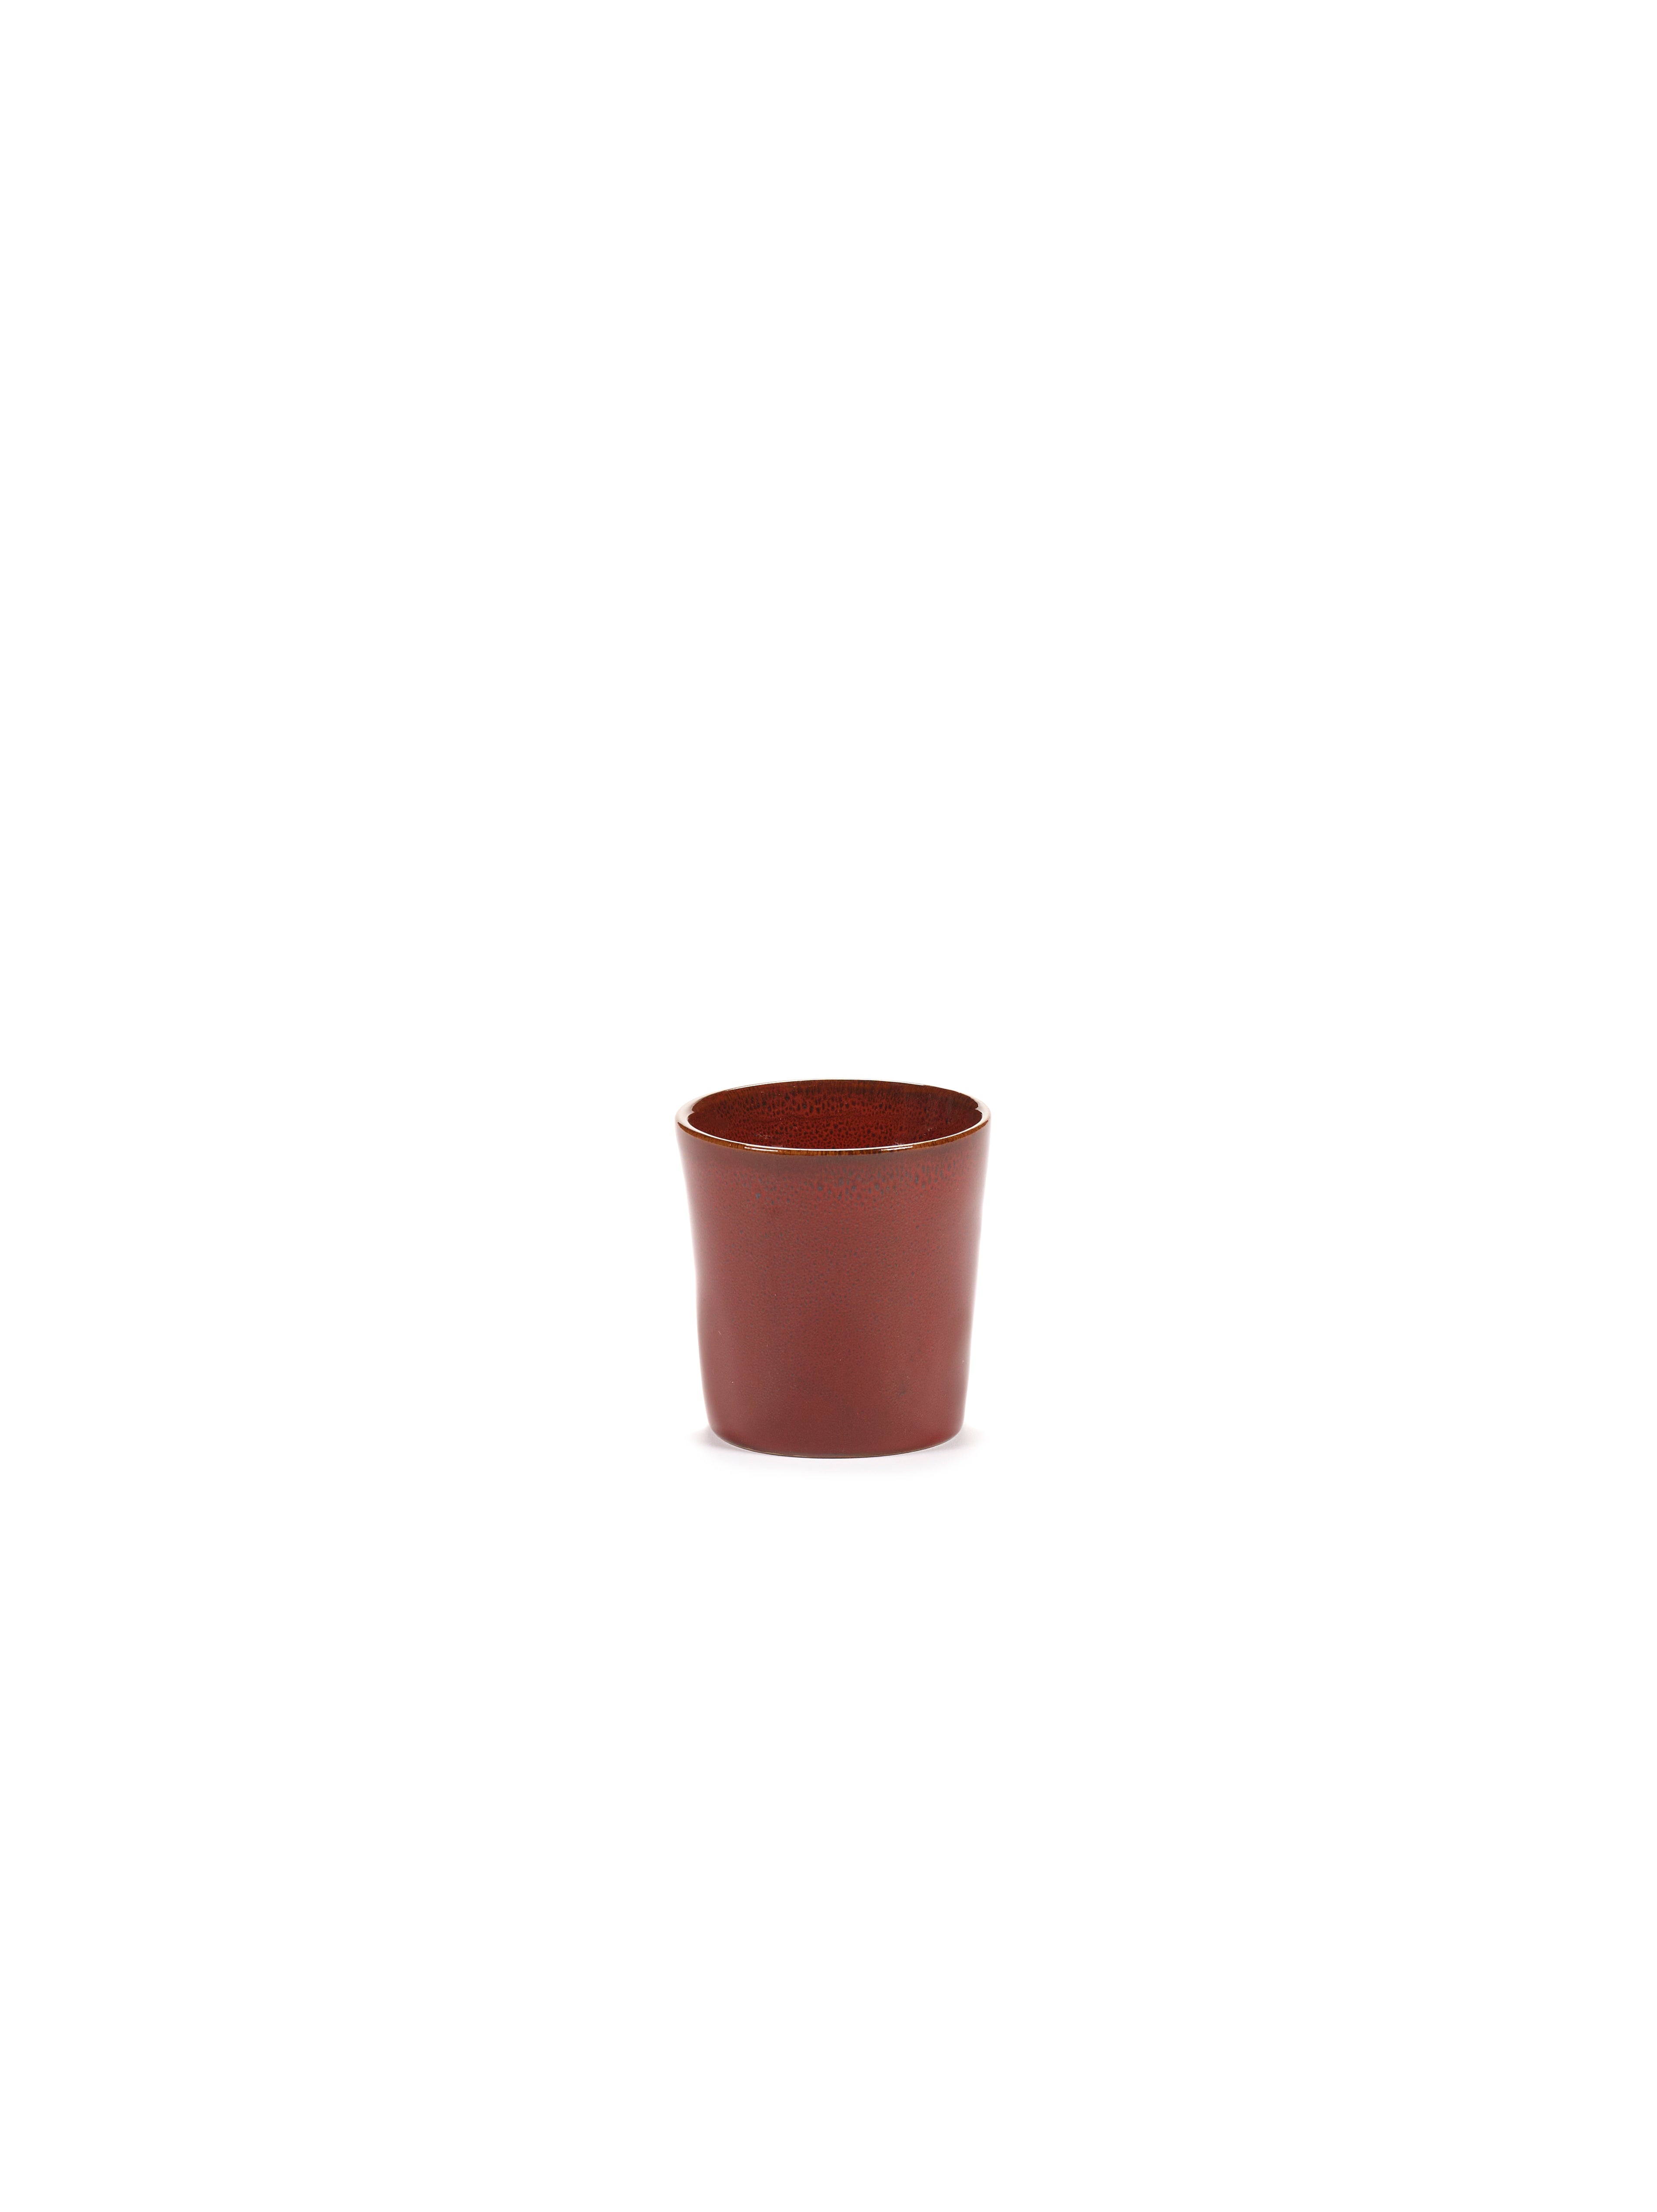 Coffee cup - La Mère by Marie Michielssen - Venetian red